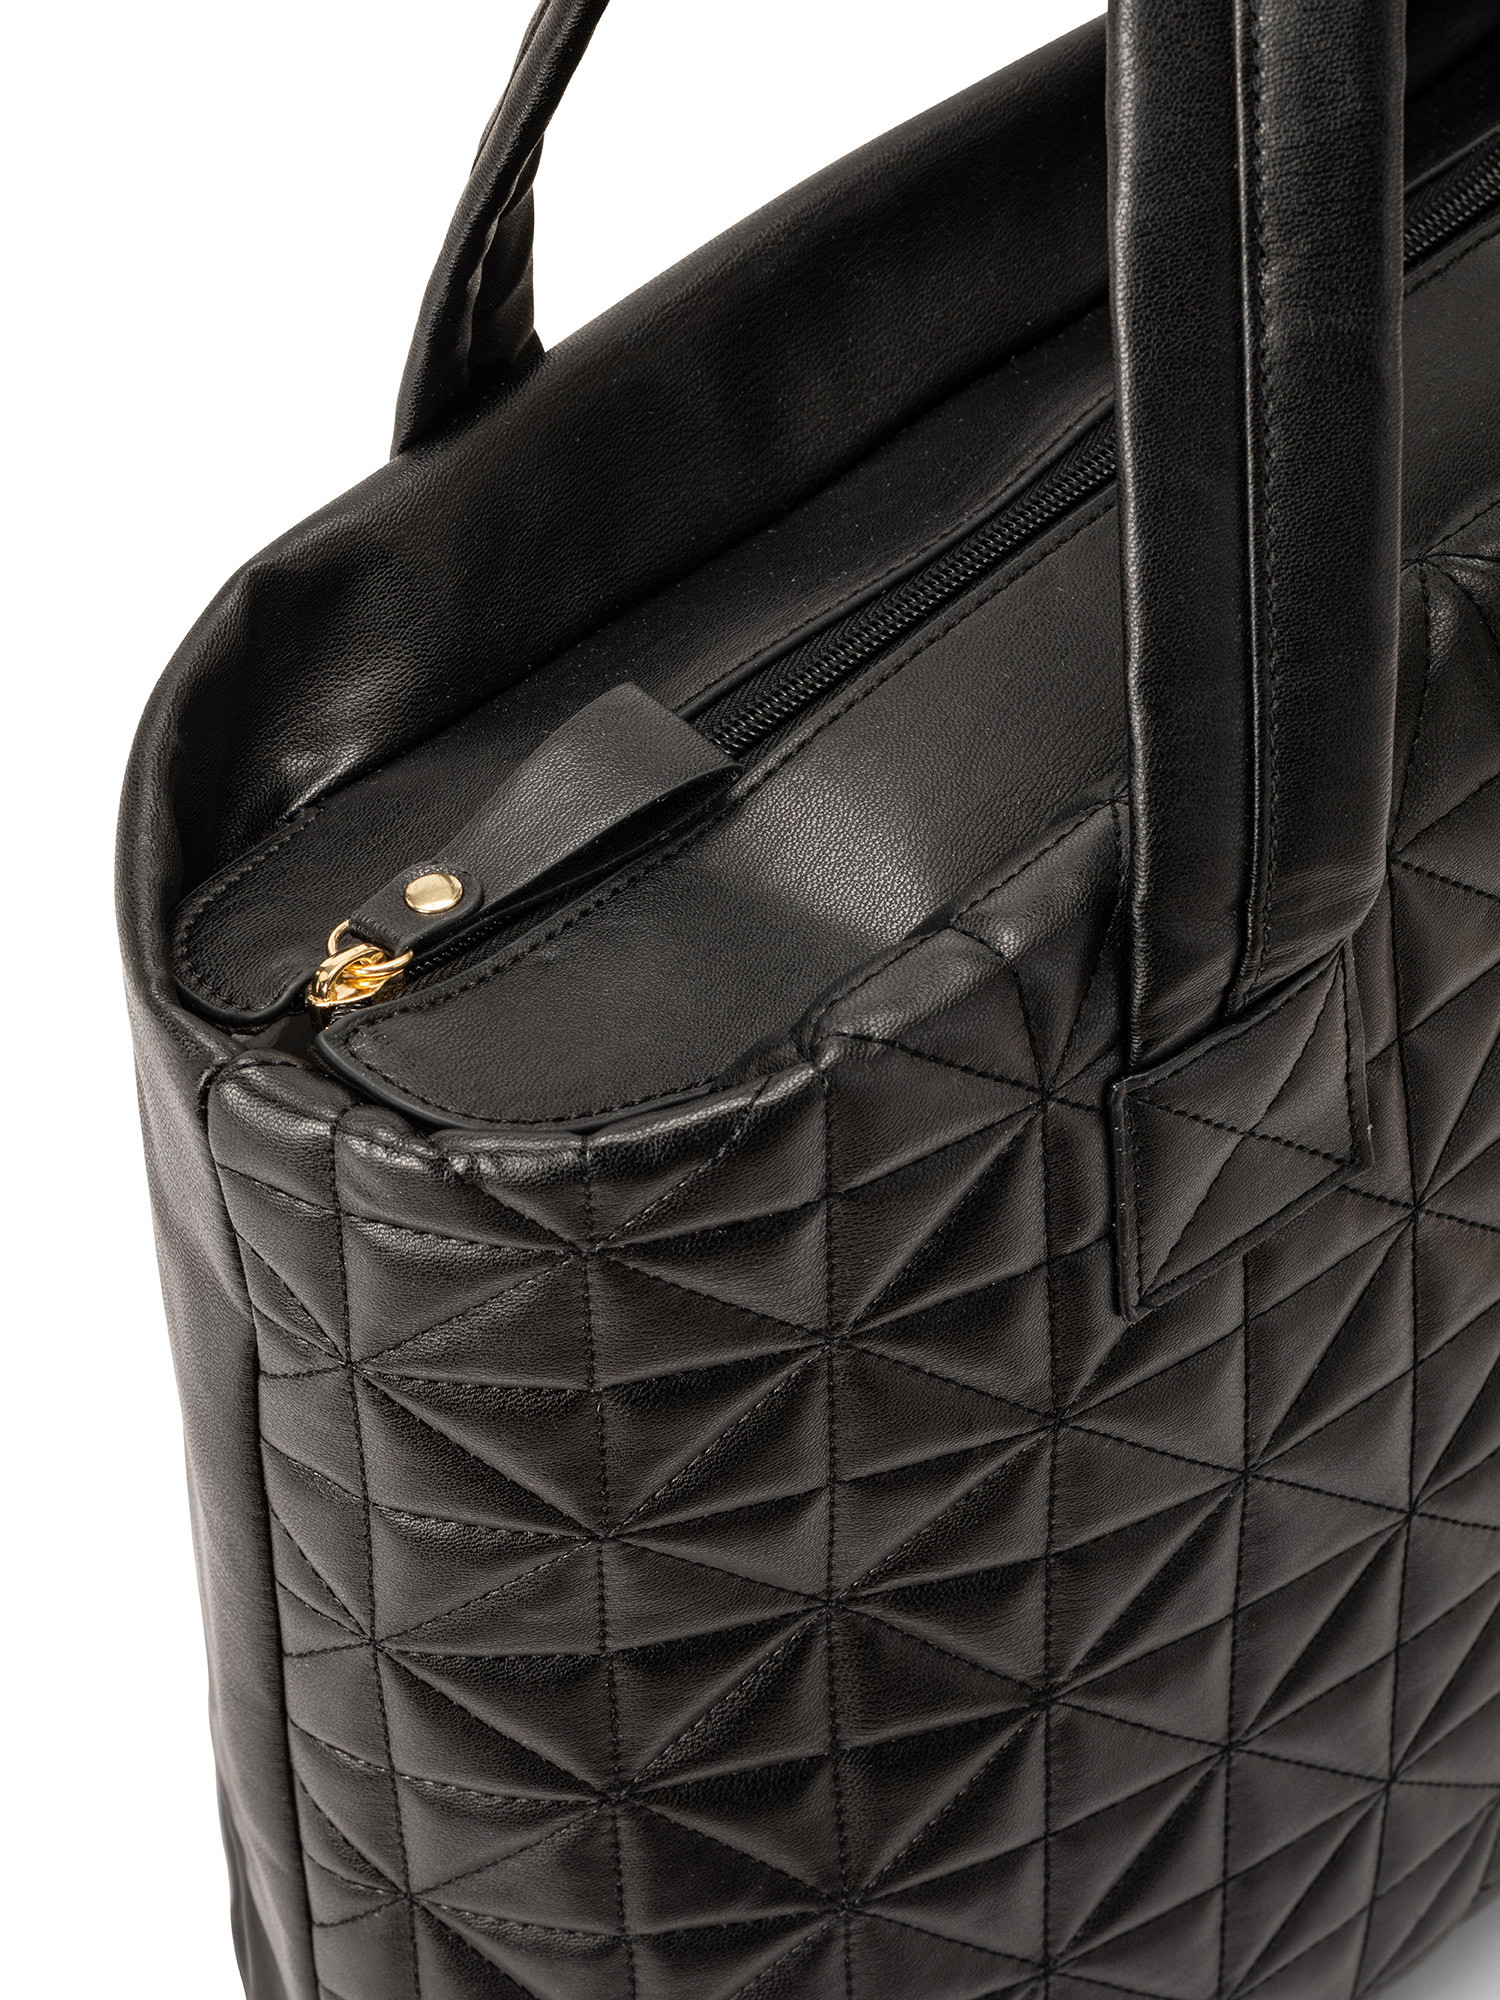 Koan - Shopping bag with motif, Black, large image number 2